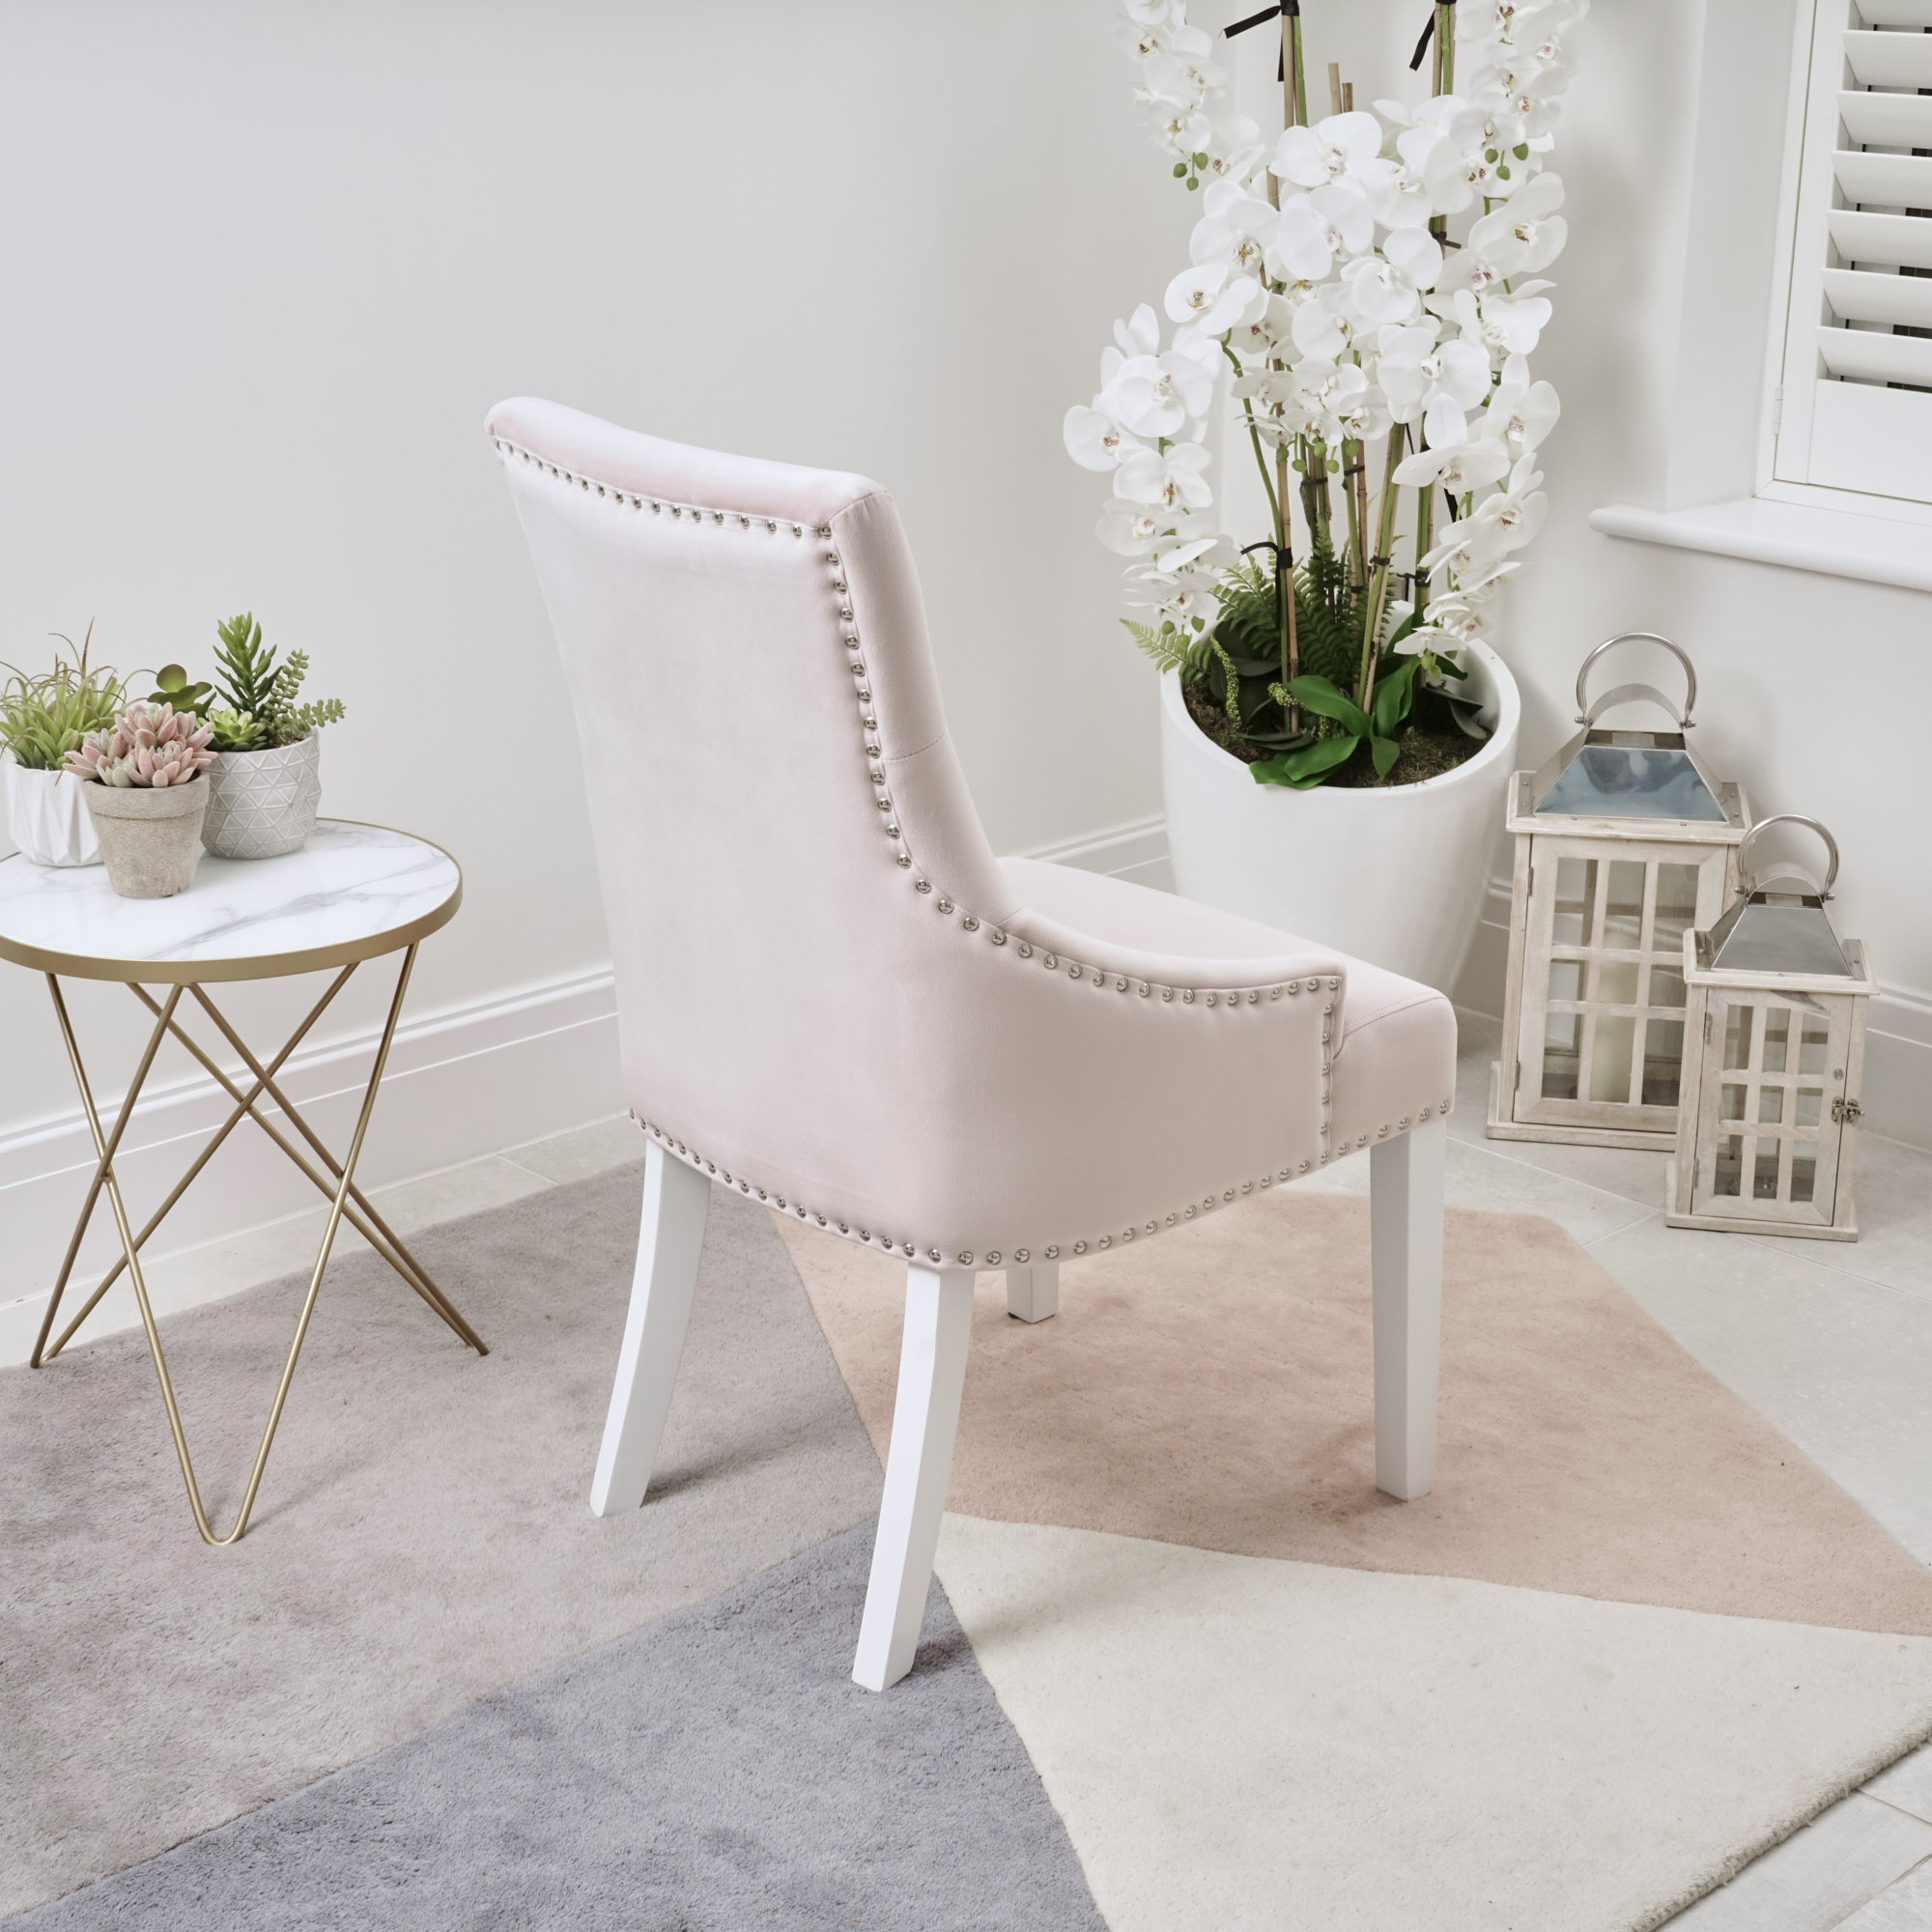 Set of 2 Chelsea Scoop Pink Velvet Dining Chair – White Legs